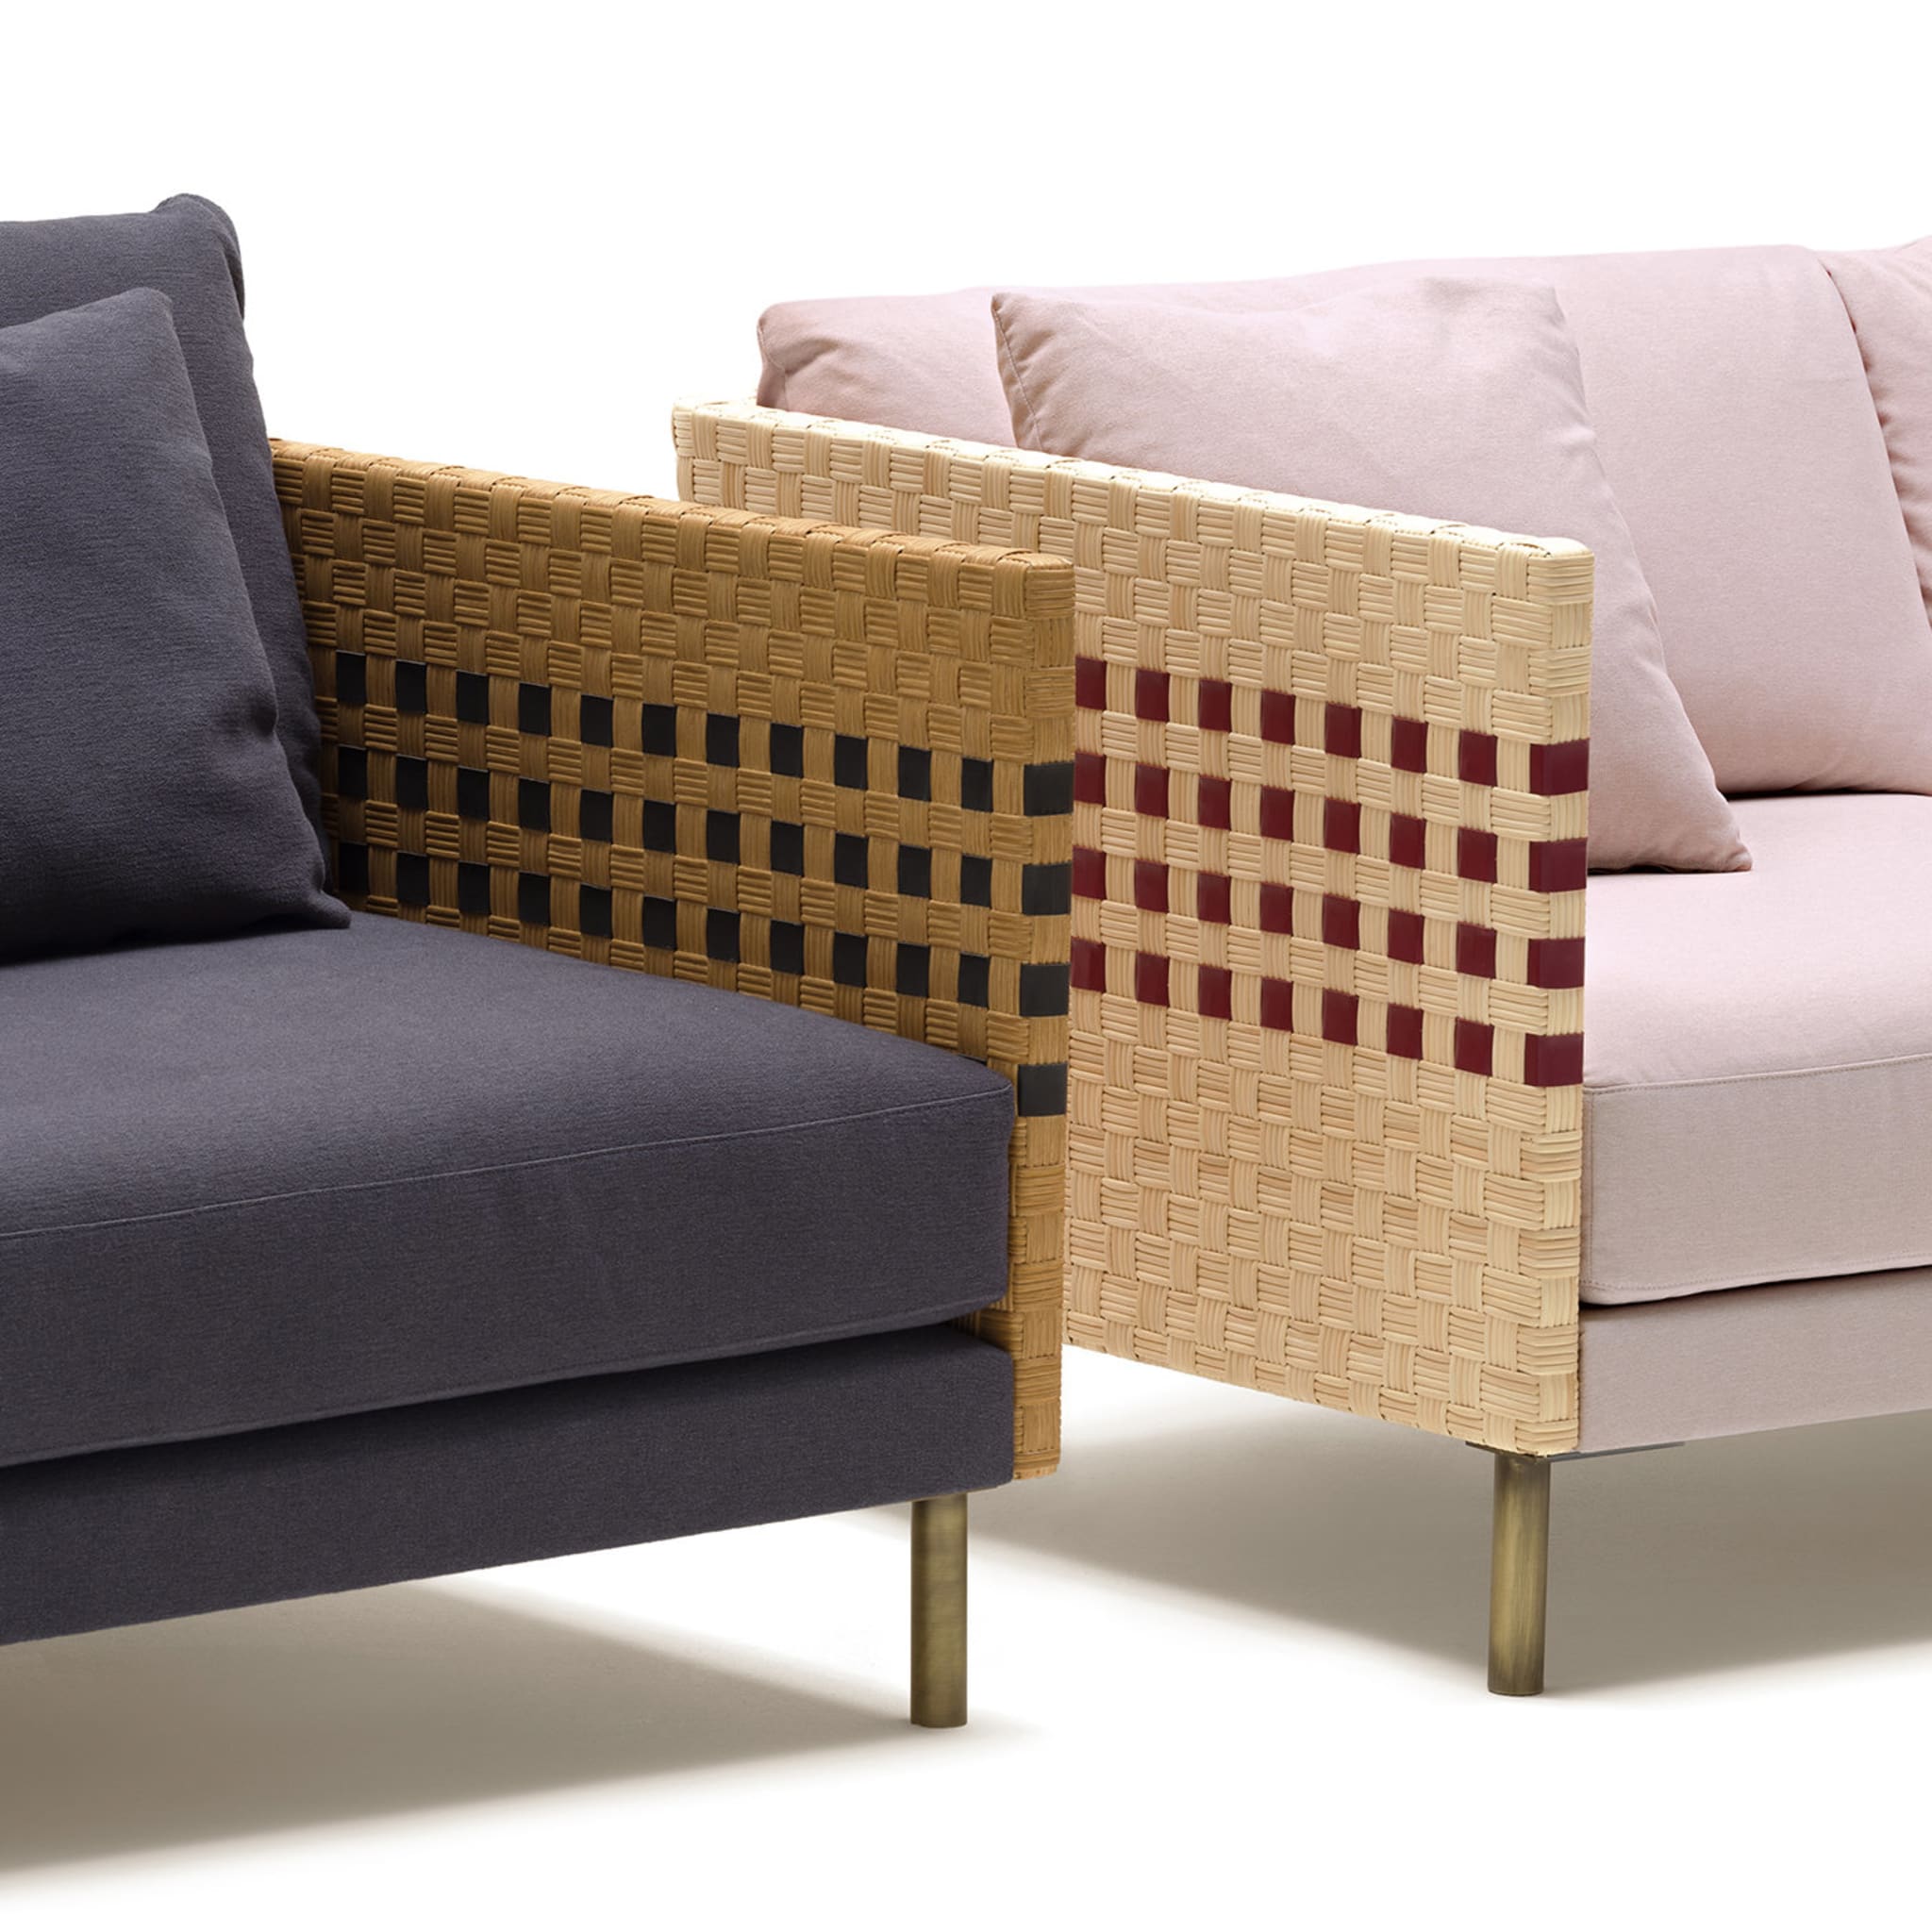 Milli Sofa by Angeletti Ruzza Design - Alternative view 2